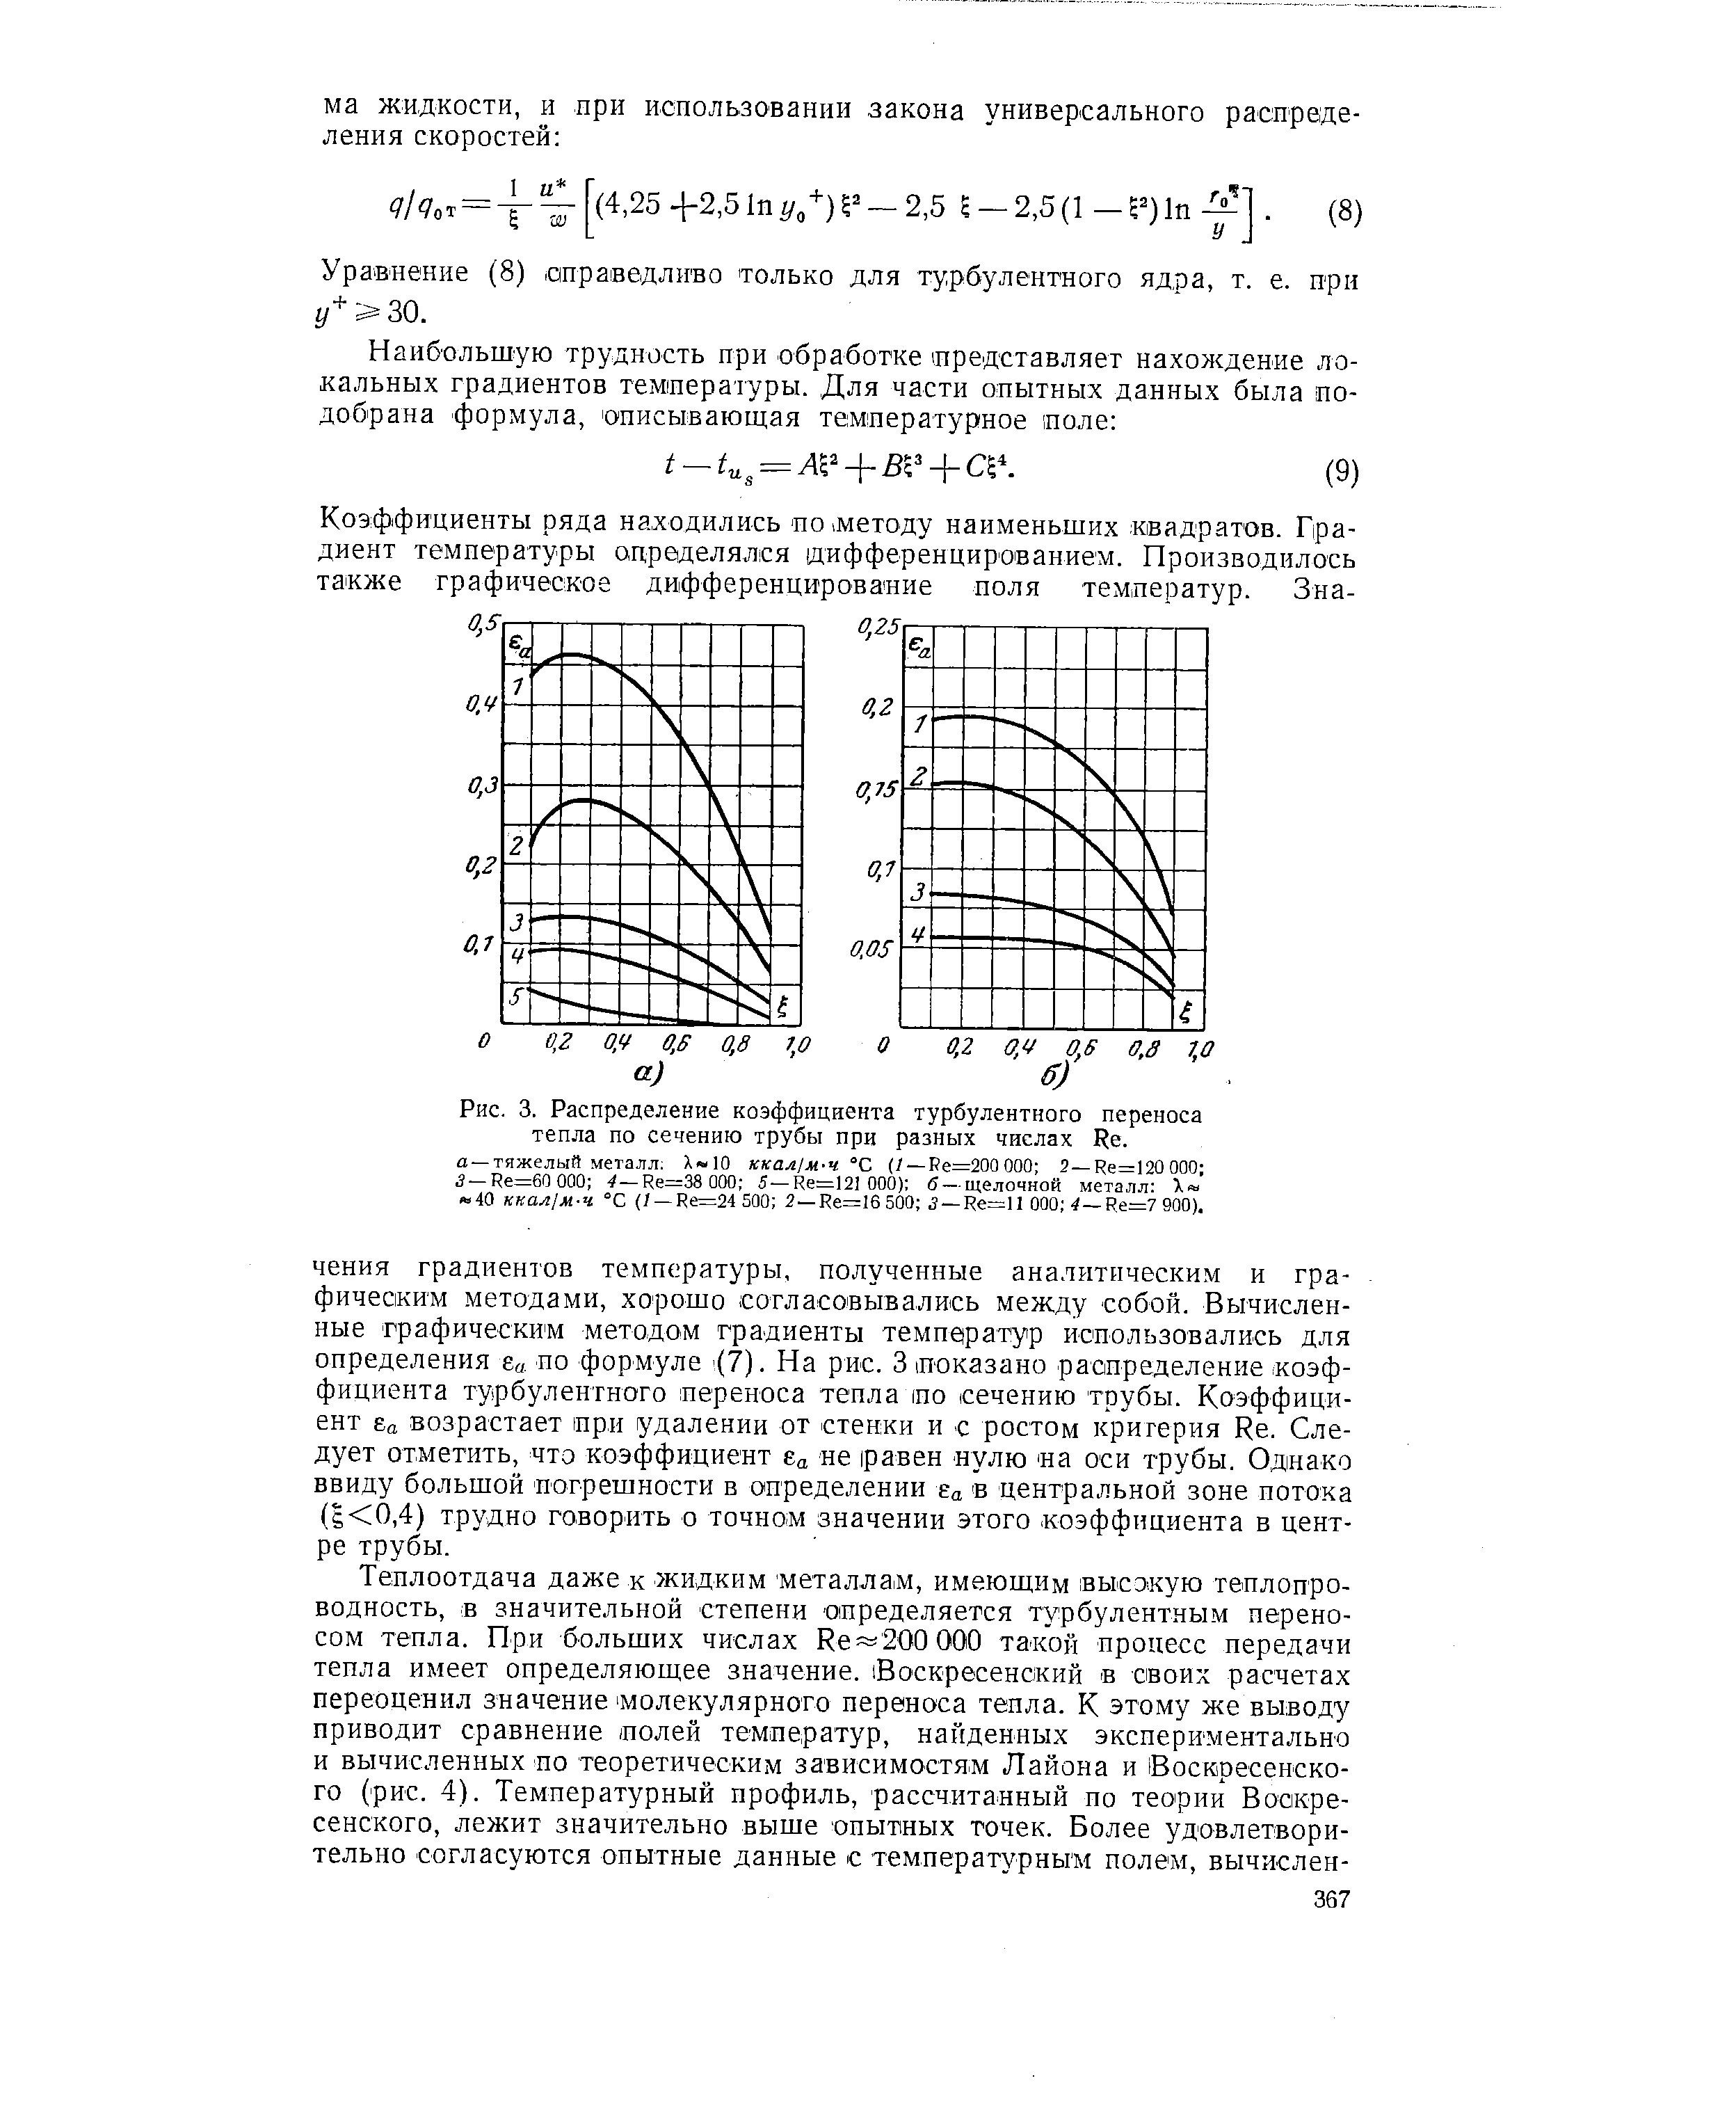 Рис. 3. Распределение коэффициента турбулентного переноса тепла по сечению трубы при разных числах Re.
